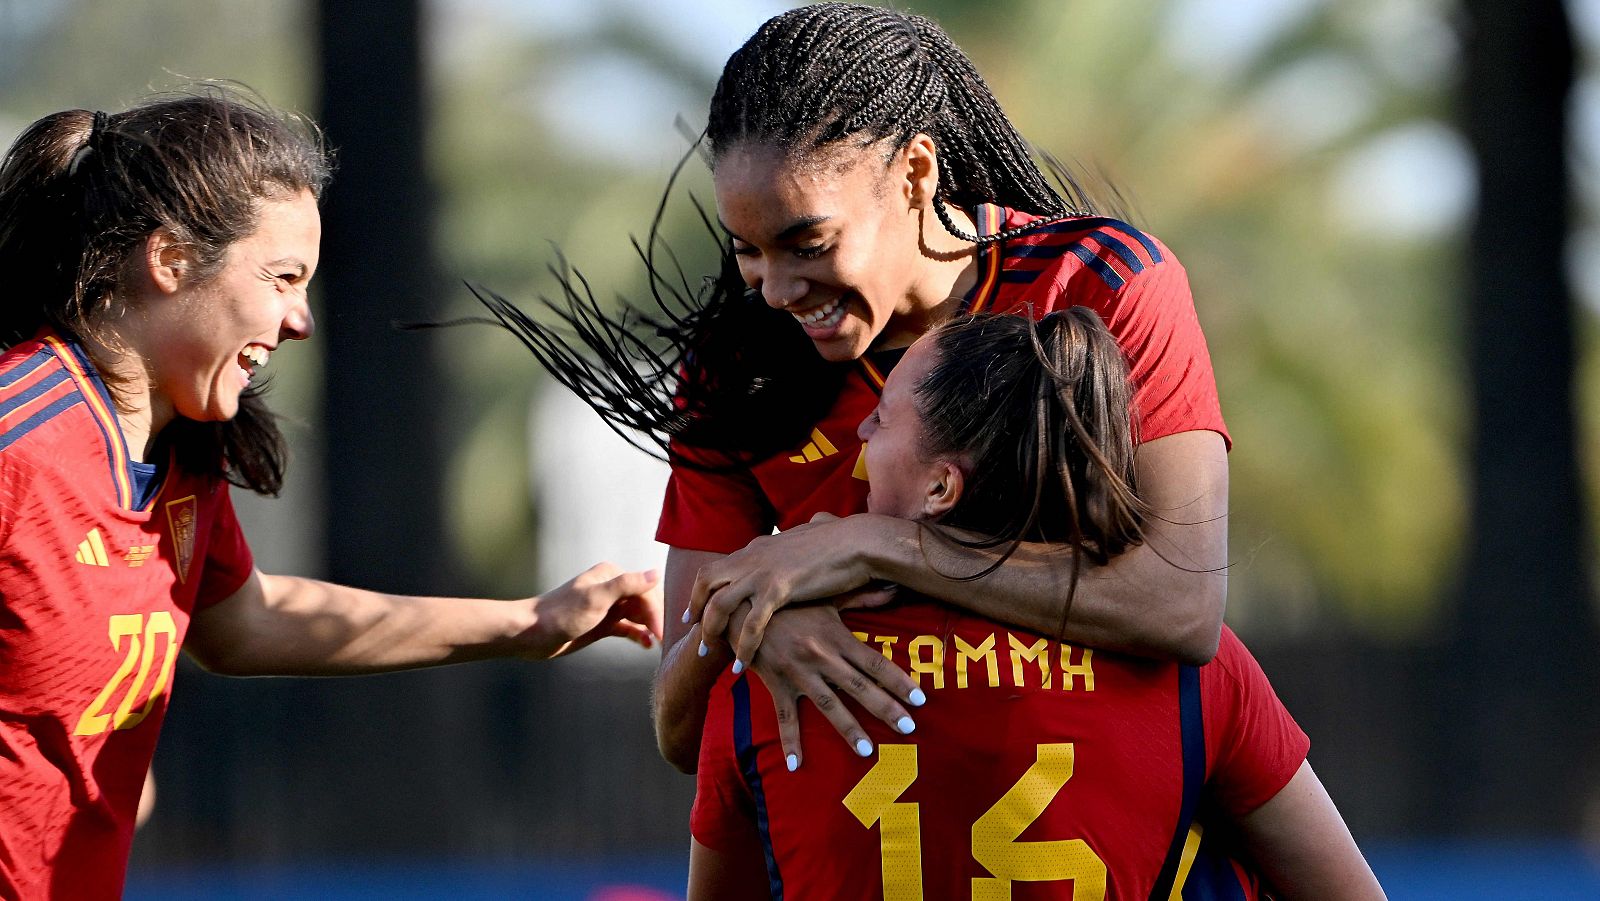 La selección española quiere alargar la dinámica positiva frente a la anfitriona Australia